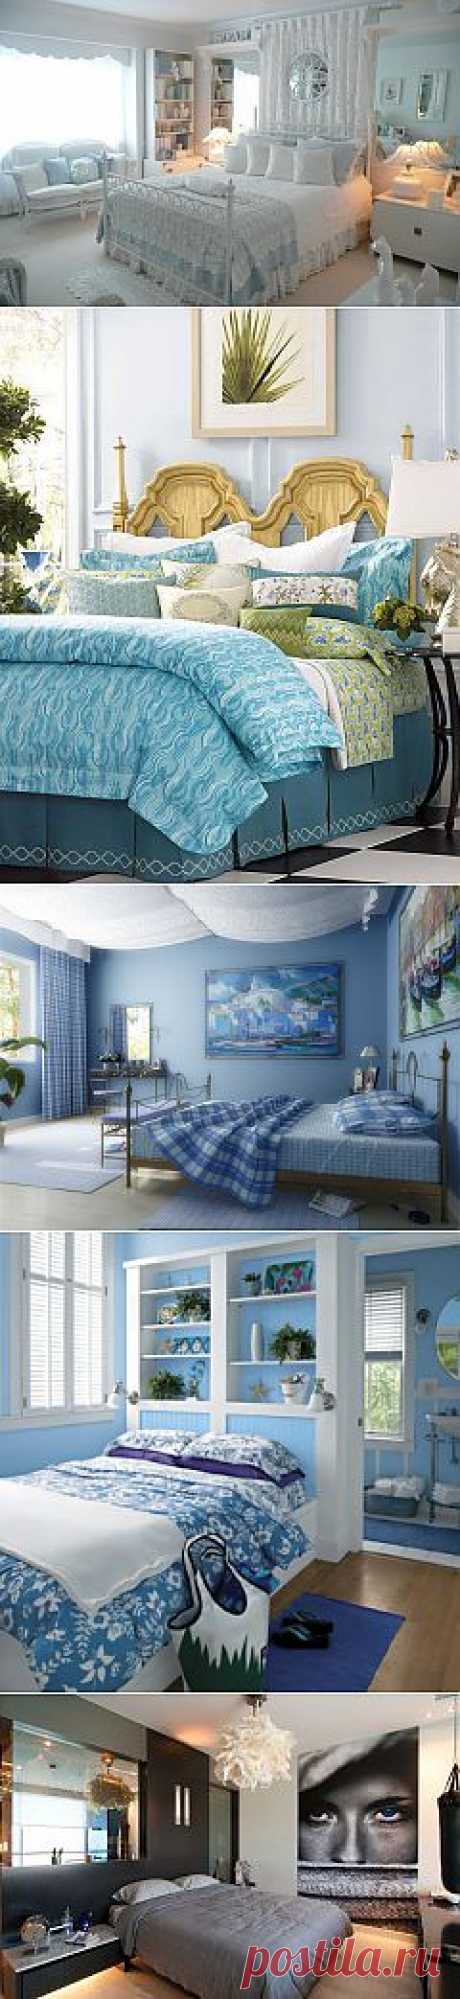 (+1) тема - Атмосфера свежести и легкой прохлады: спальни в голубых тонах | Интерьер и Дизайн